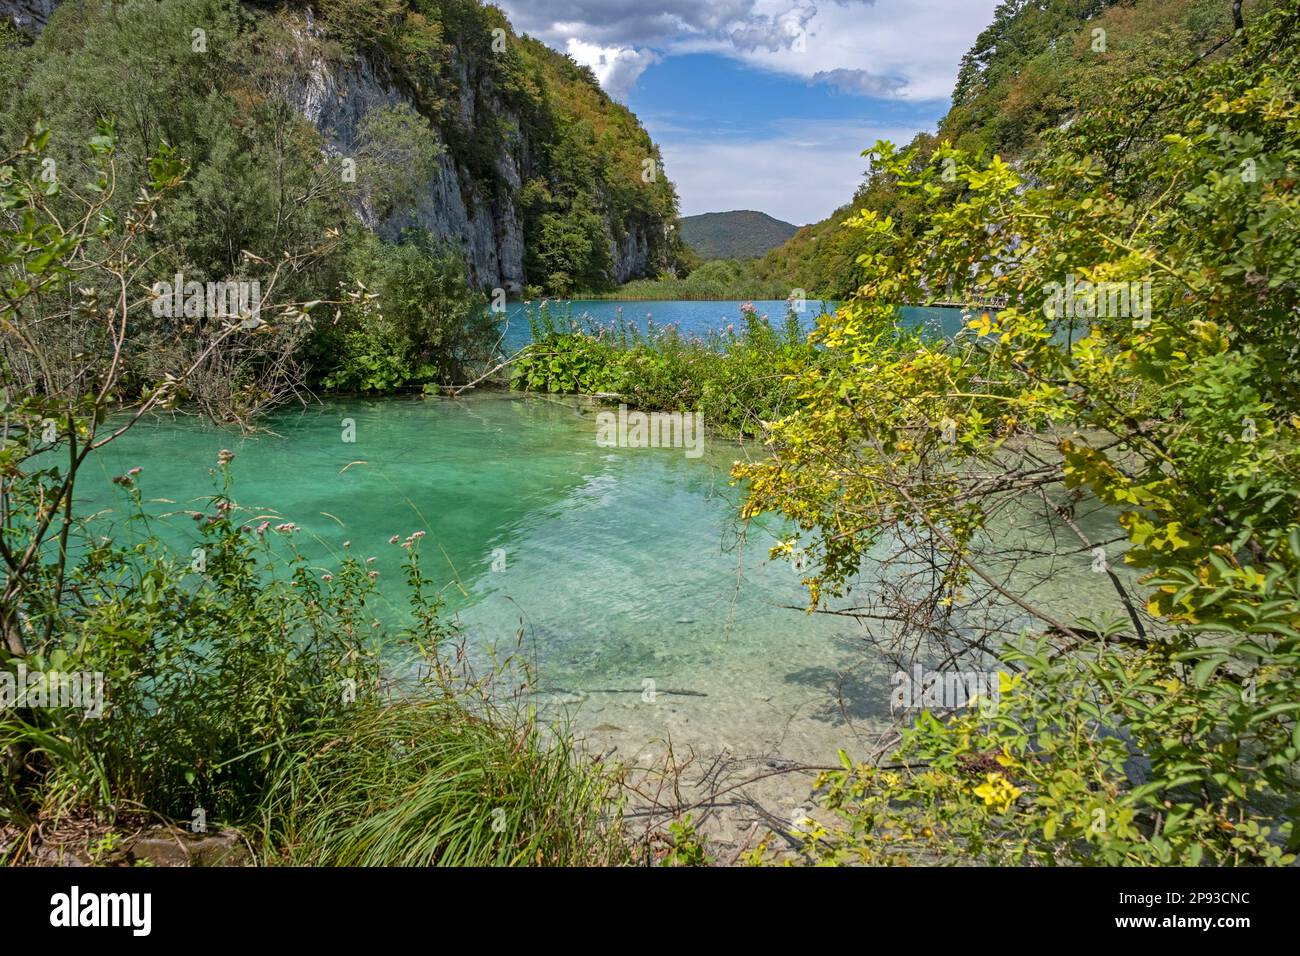 Lake in the Plitvice Lakes National Park / Nacionalni park Plitvička jezera in Lika-Senj County, Croatia Stock Photo